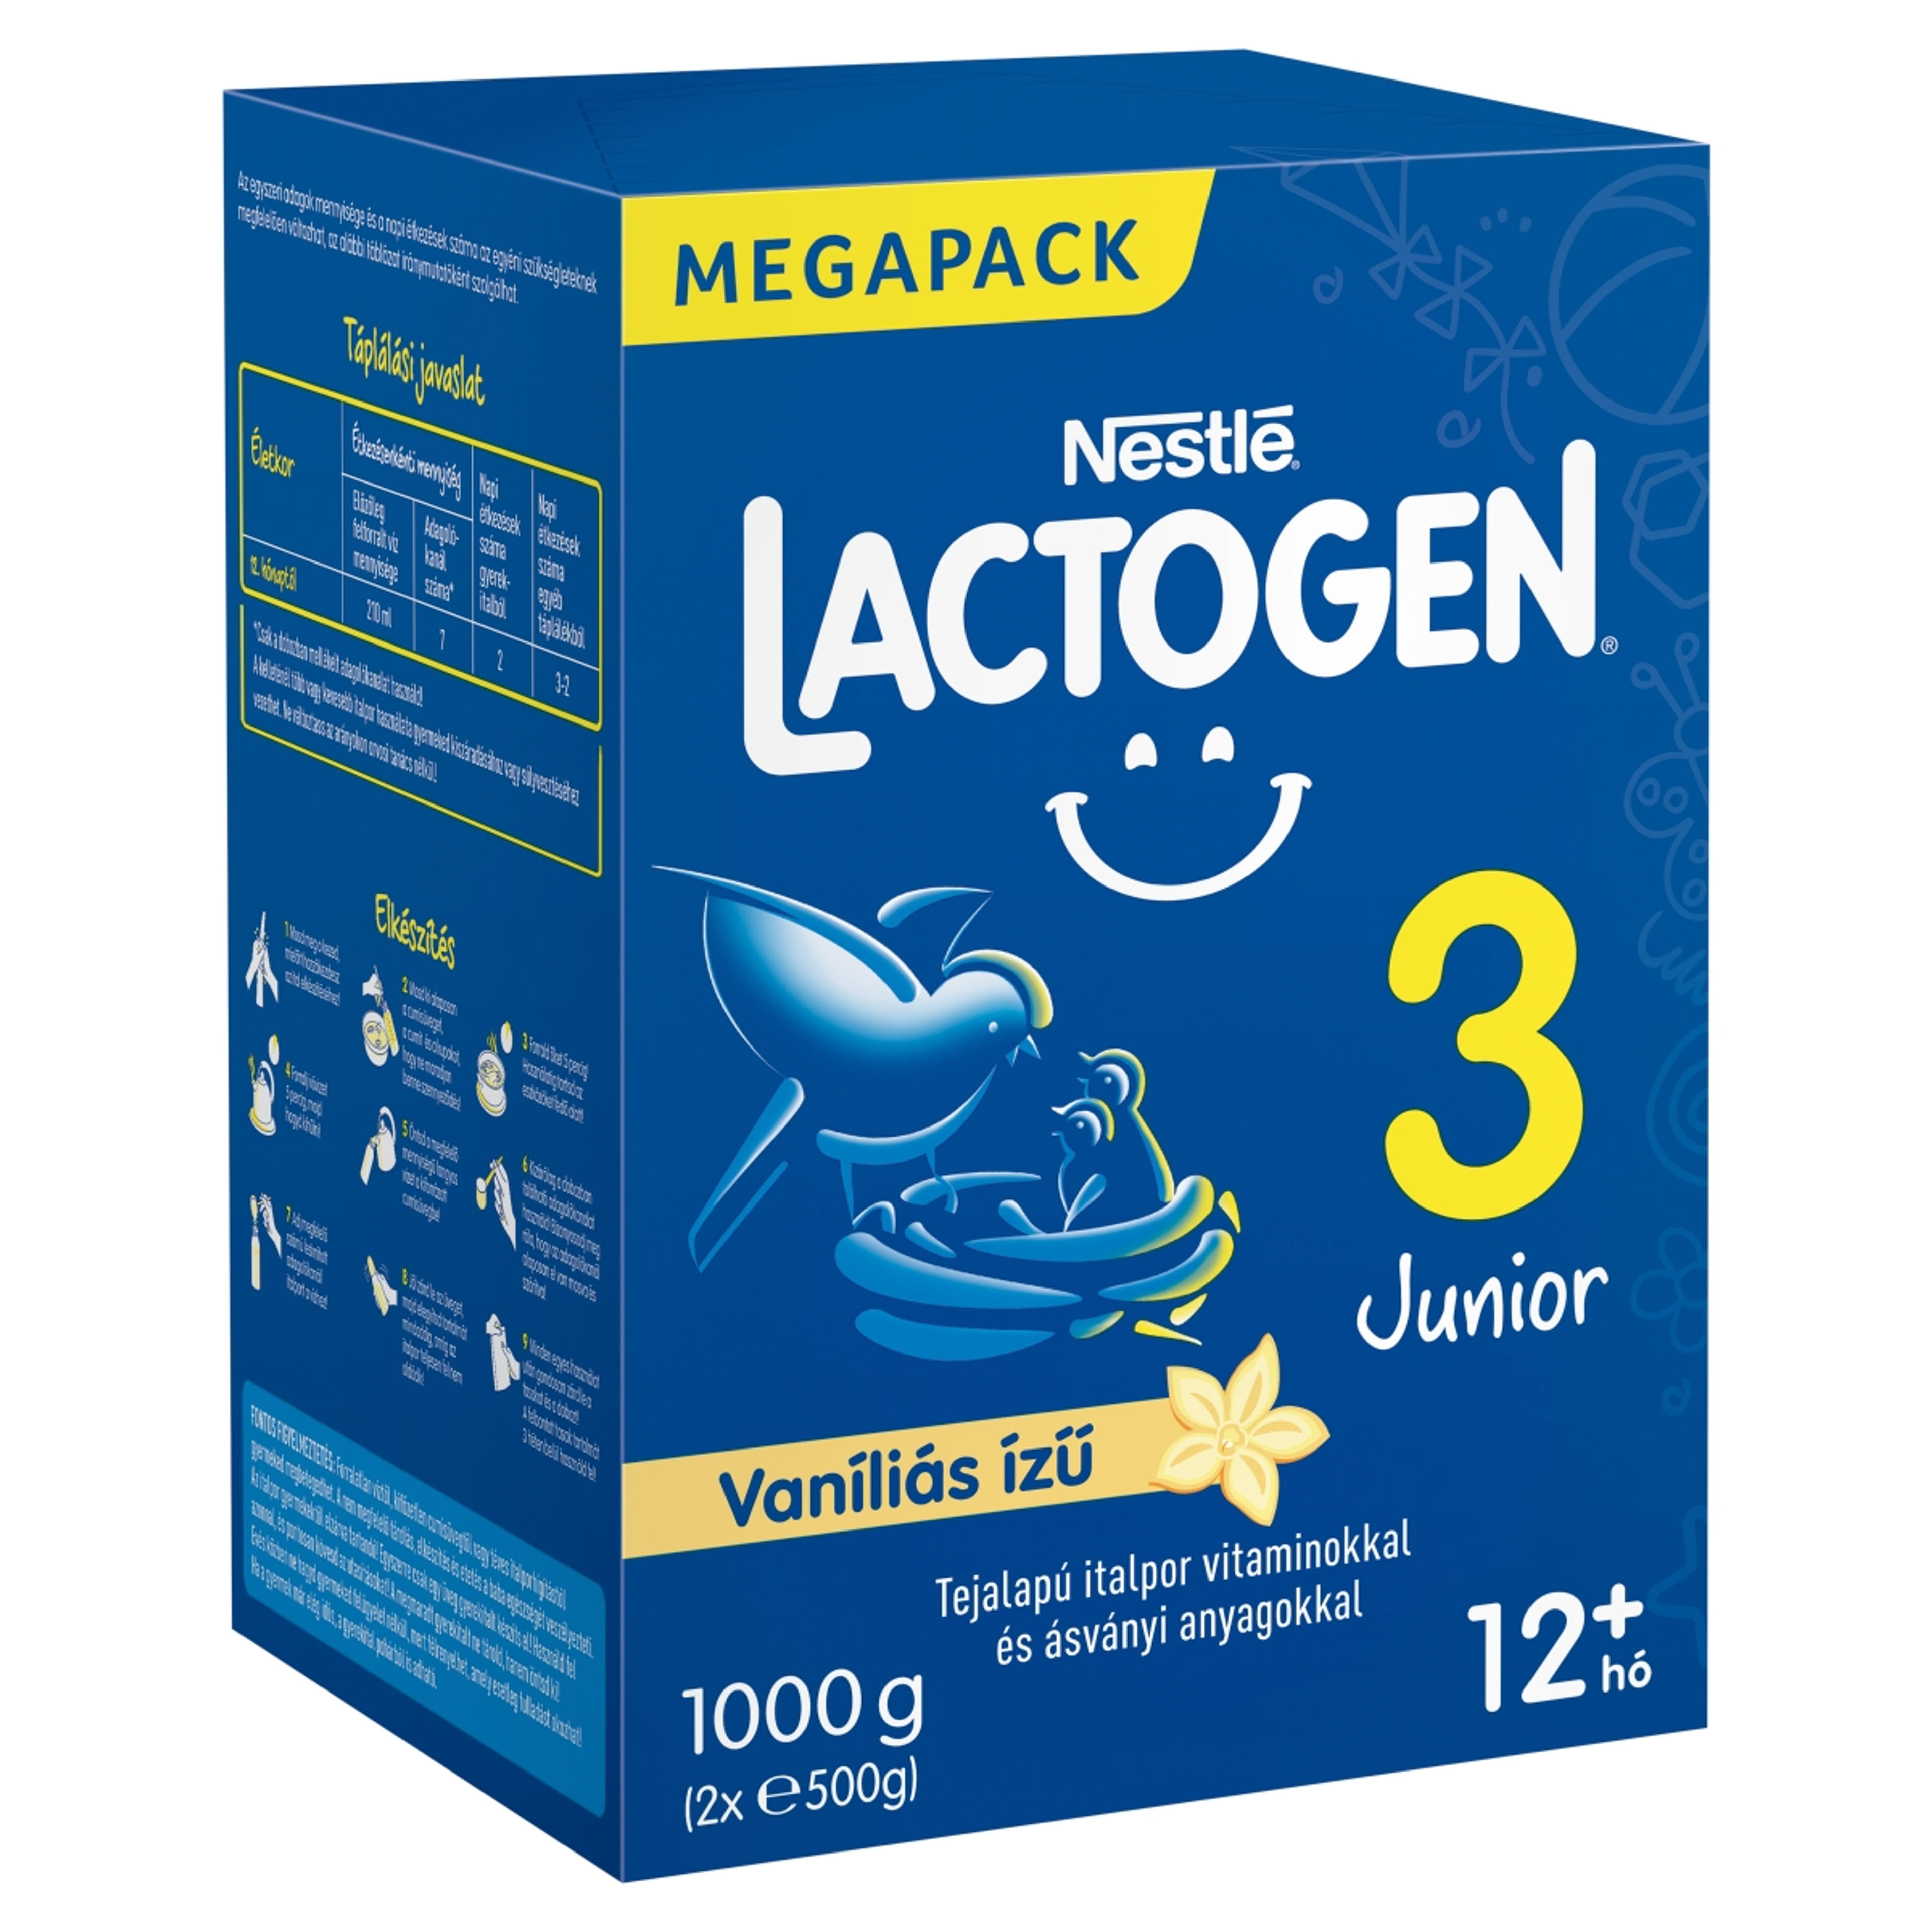 Lactogen 3 Junior tejalapú italpor vitaminokkal és ásványi anyagokkal vaníliás ízű 12 hónapos kortól - 1000 g-2